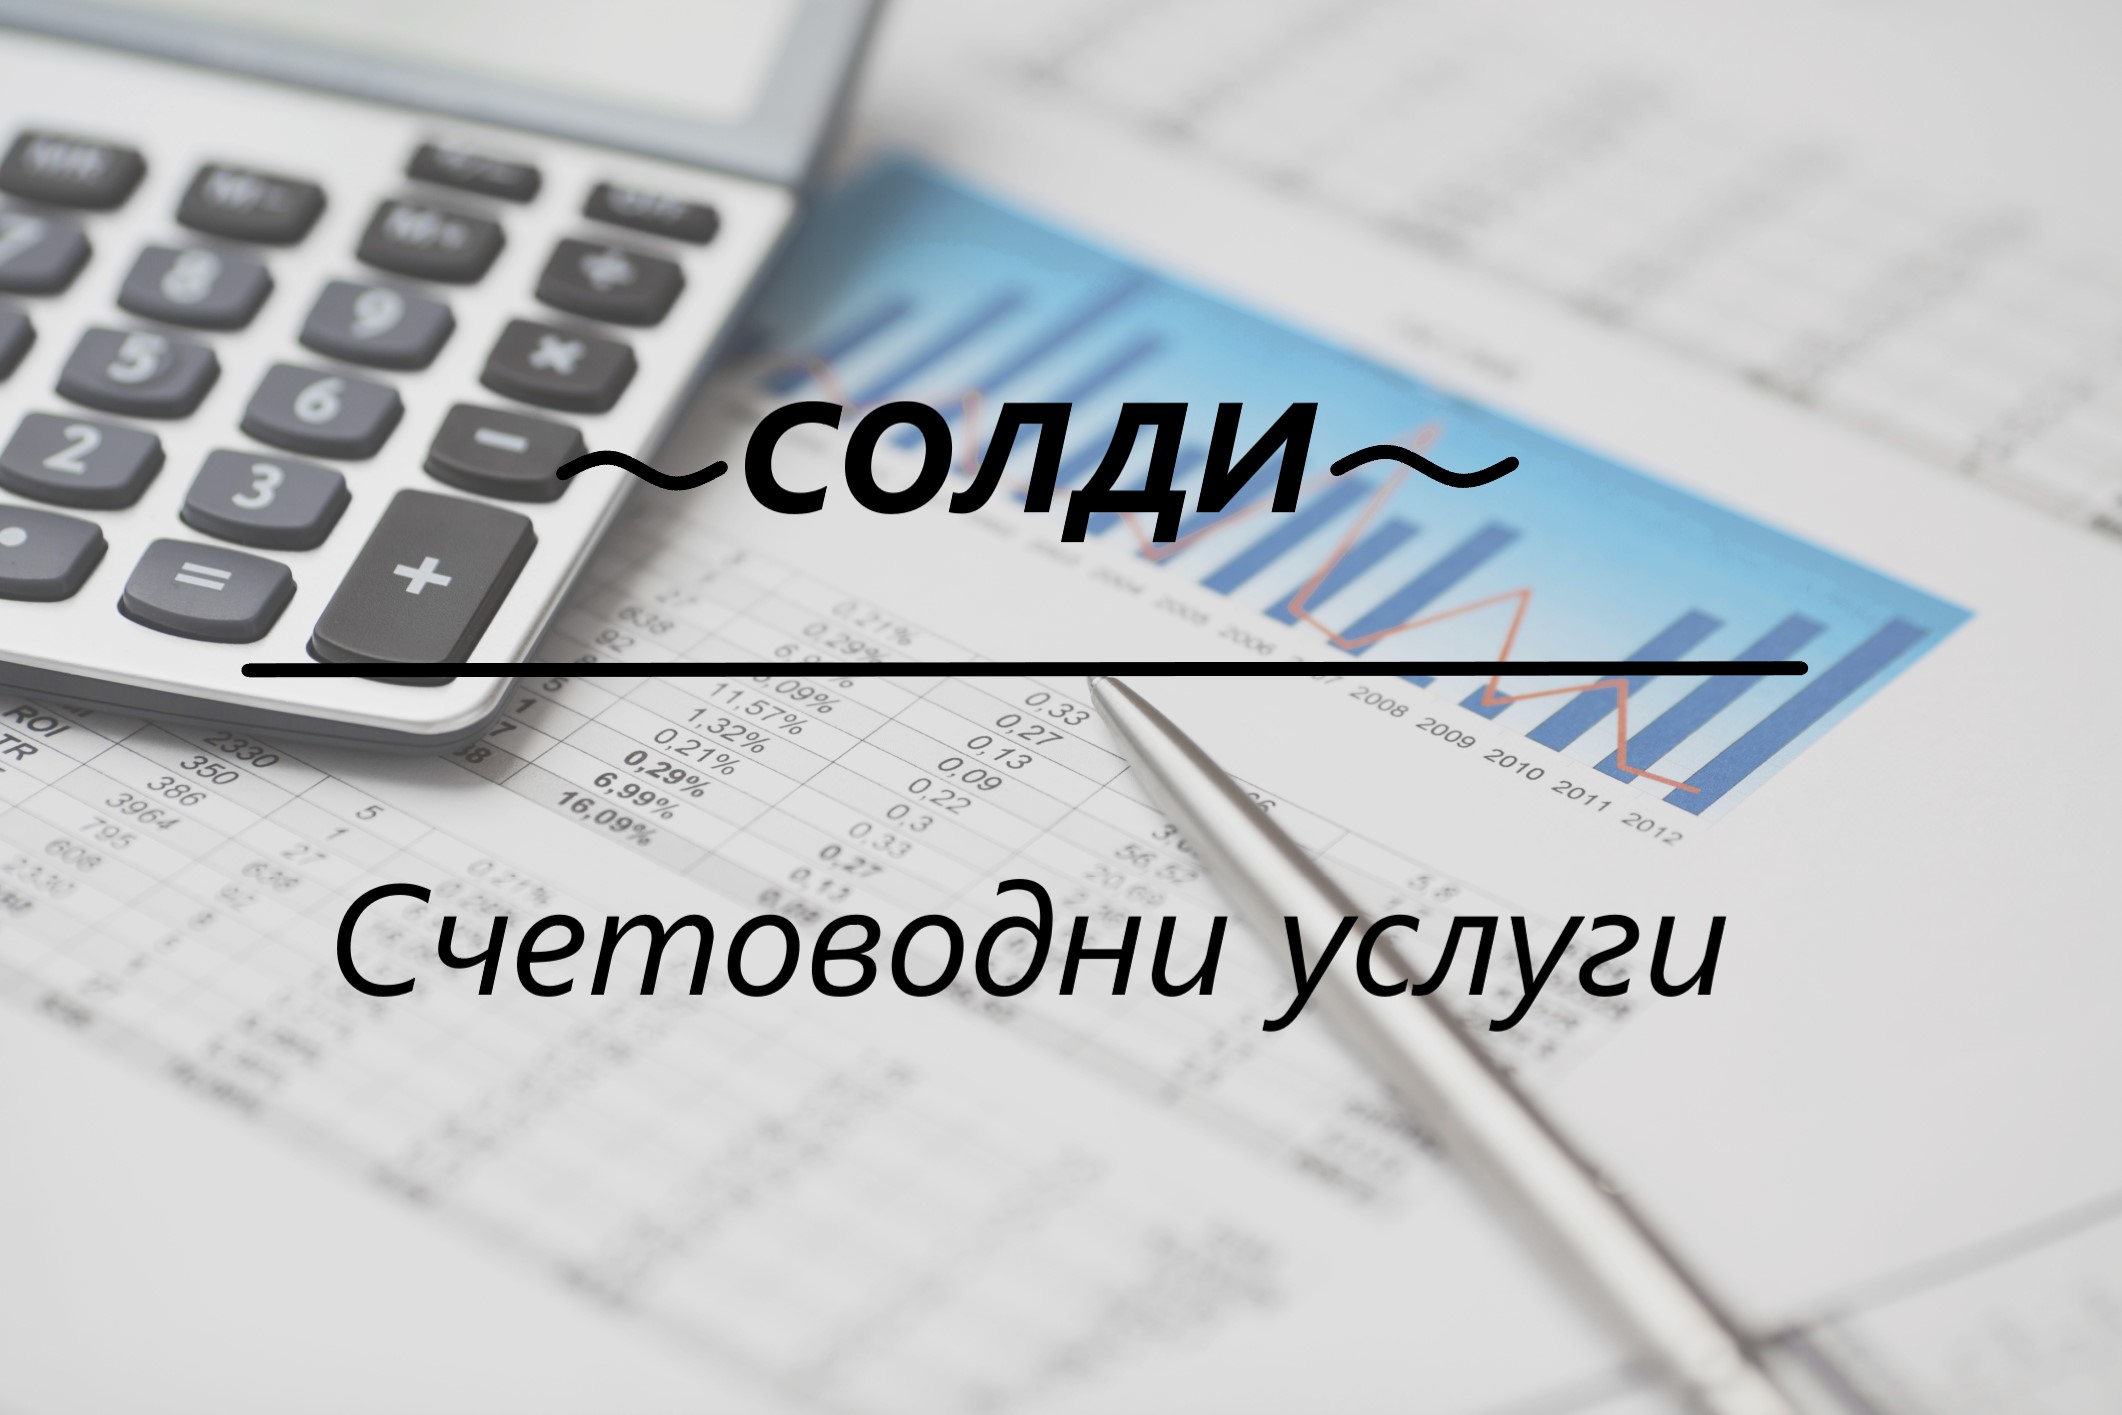 Image for "СОЛДИ" ООД | Счетоводни услуги, Севлиево